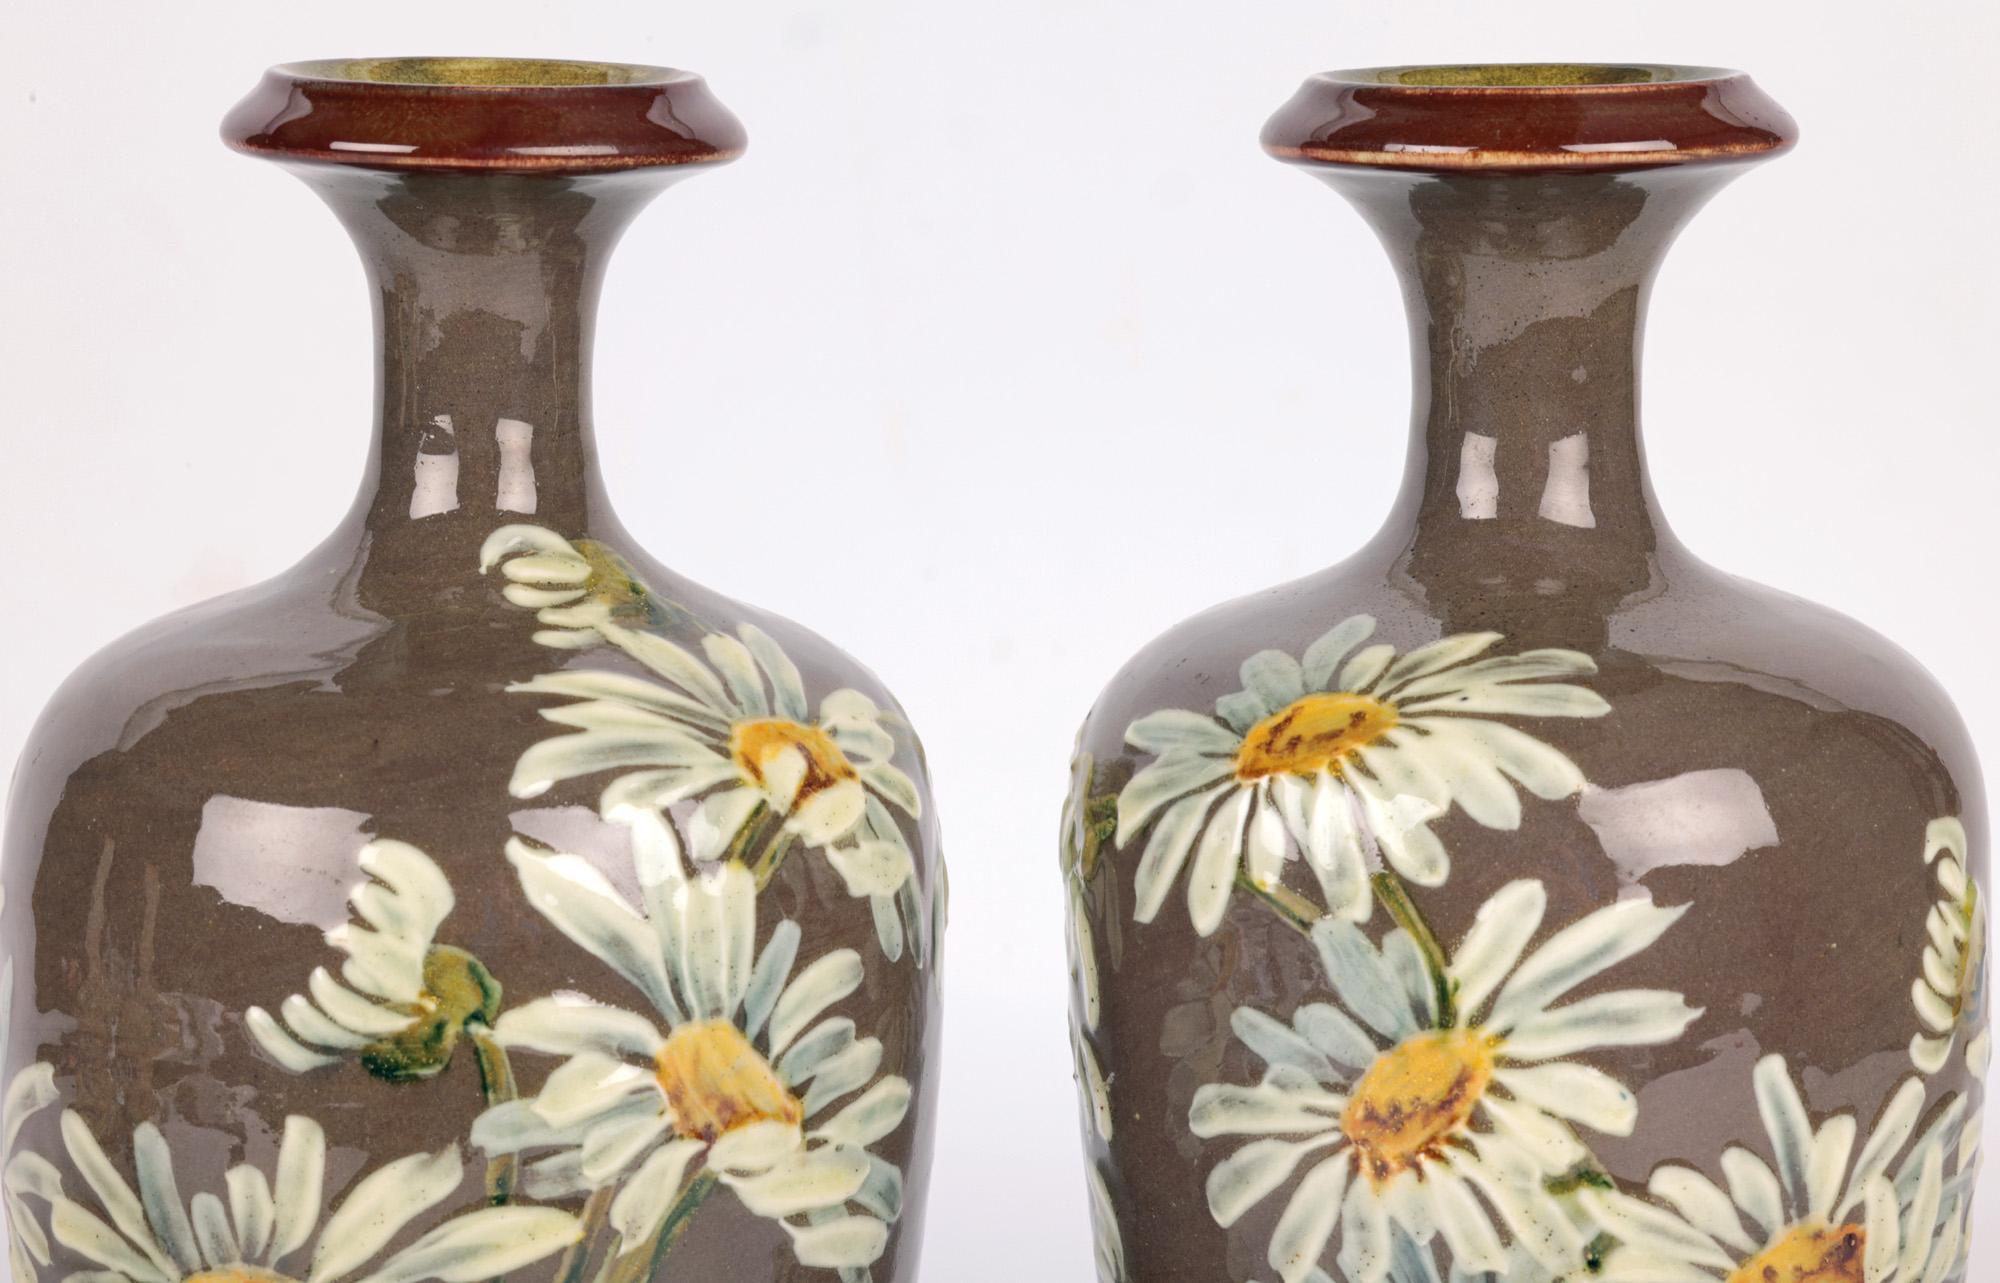 Une superbe paire de vases Doulton Lambeth Impasto peints de marguerites par la célèbre artiste de Faïence Kate Rogers et datés de 1885. 

Les vases en grès sont de forme bulbeuse élevée, reposant sur des bases en forme de bol inversé, avec un corps